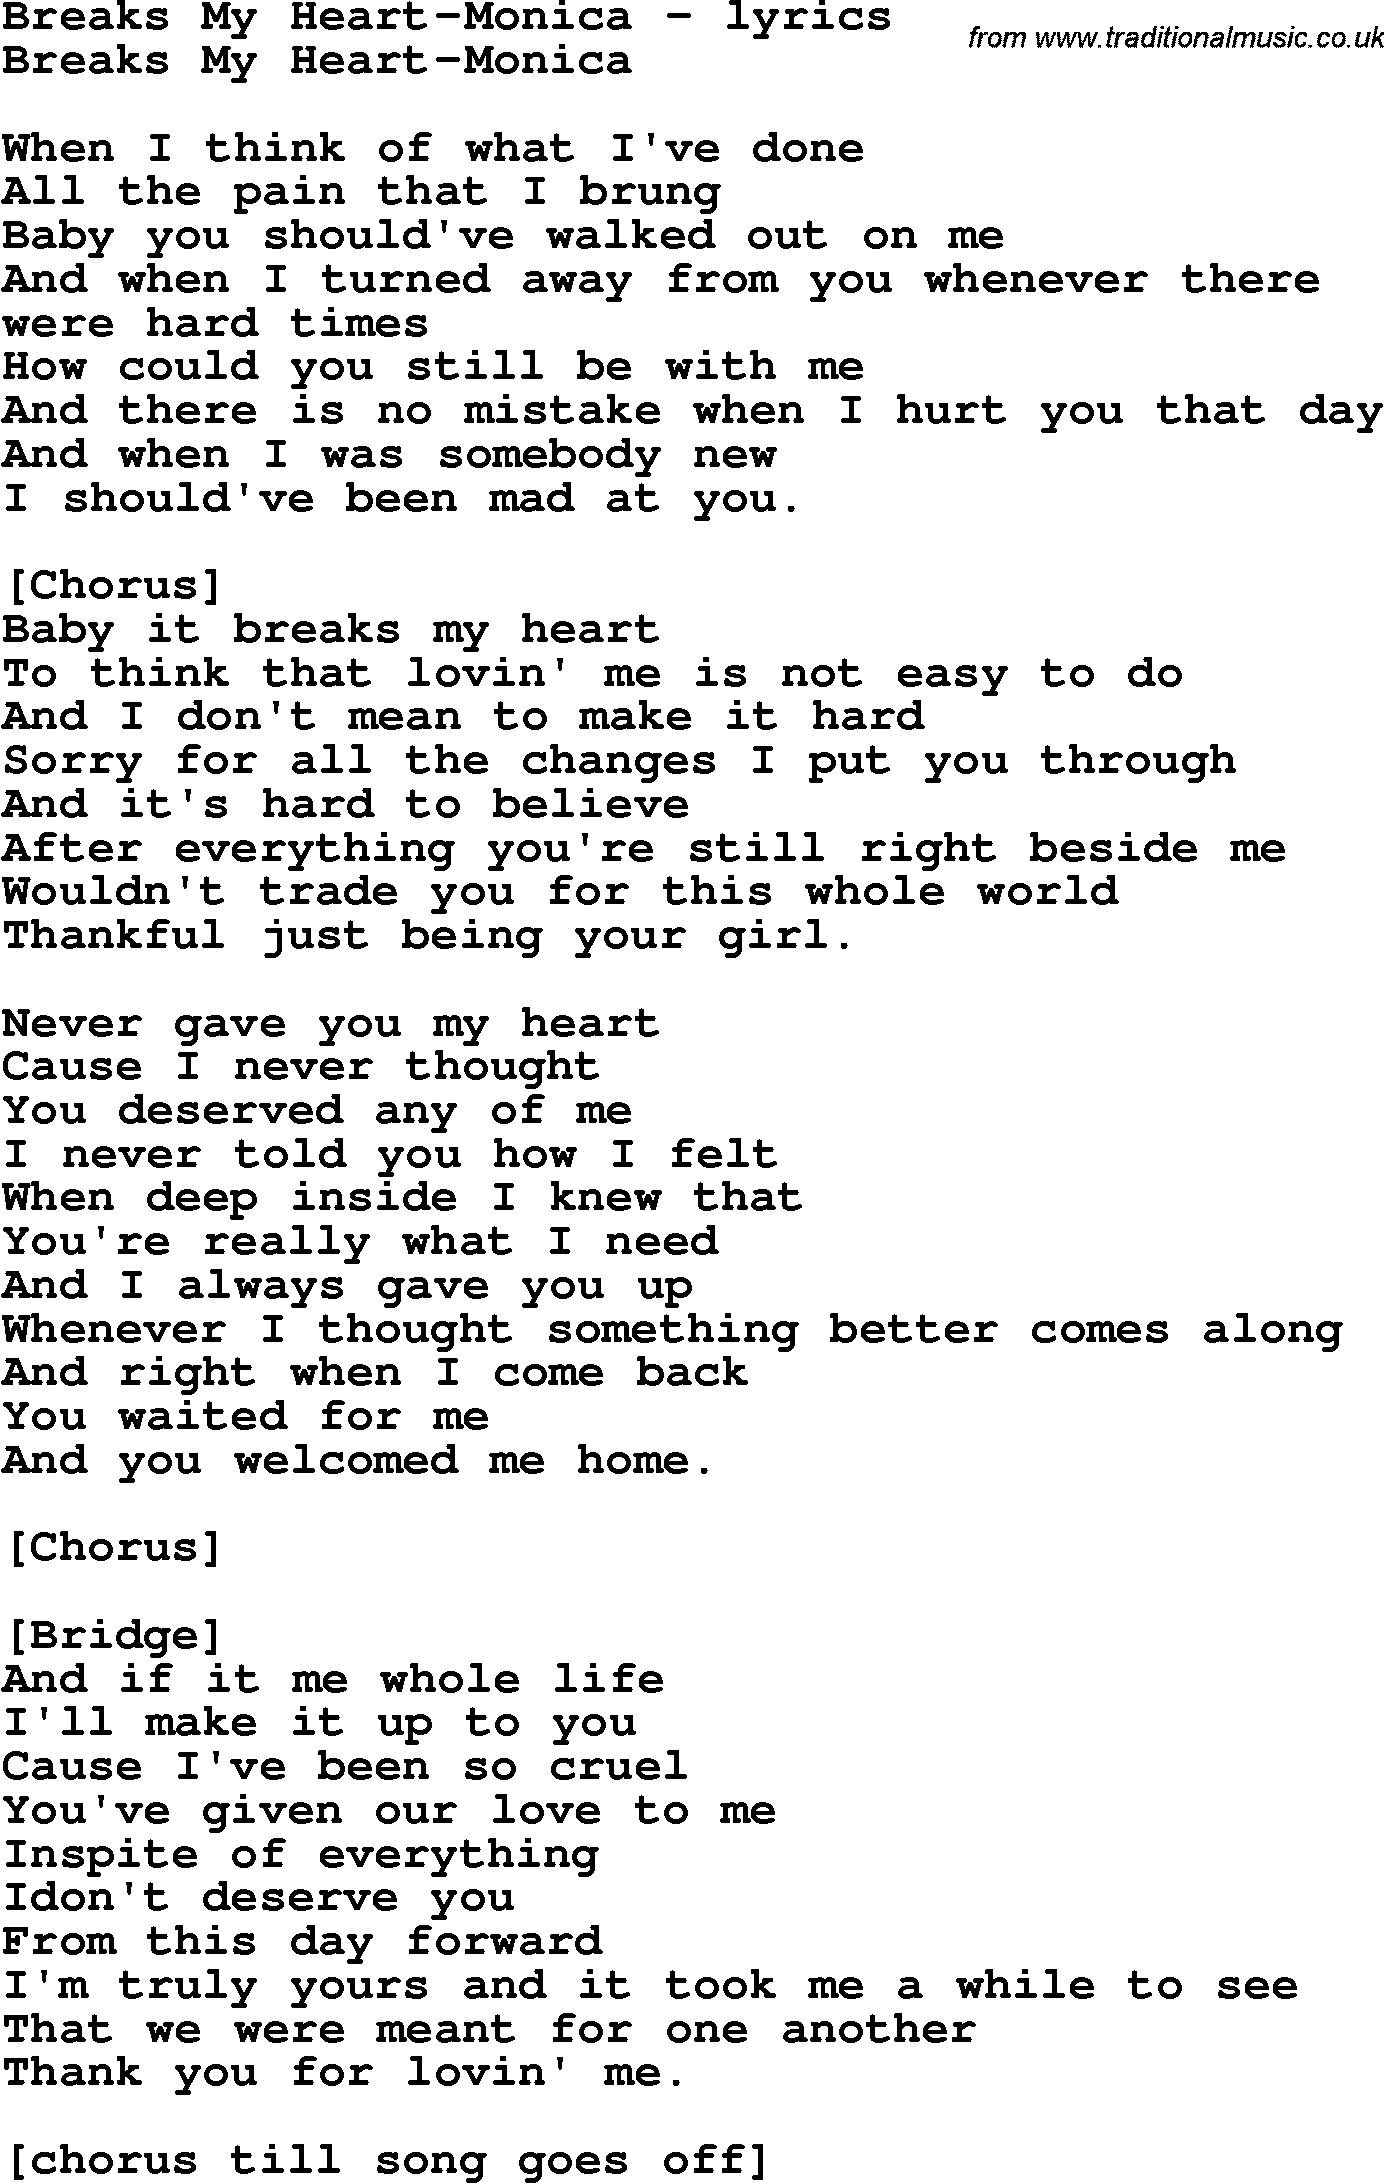 Love Song Lyrics for:Breaks My Heart-Monica